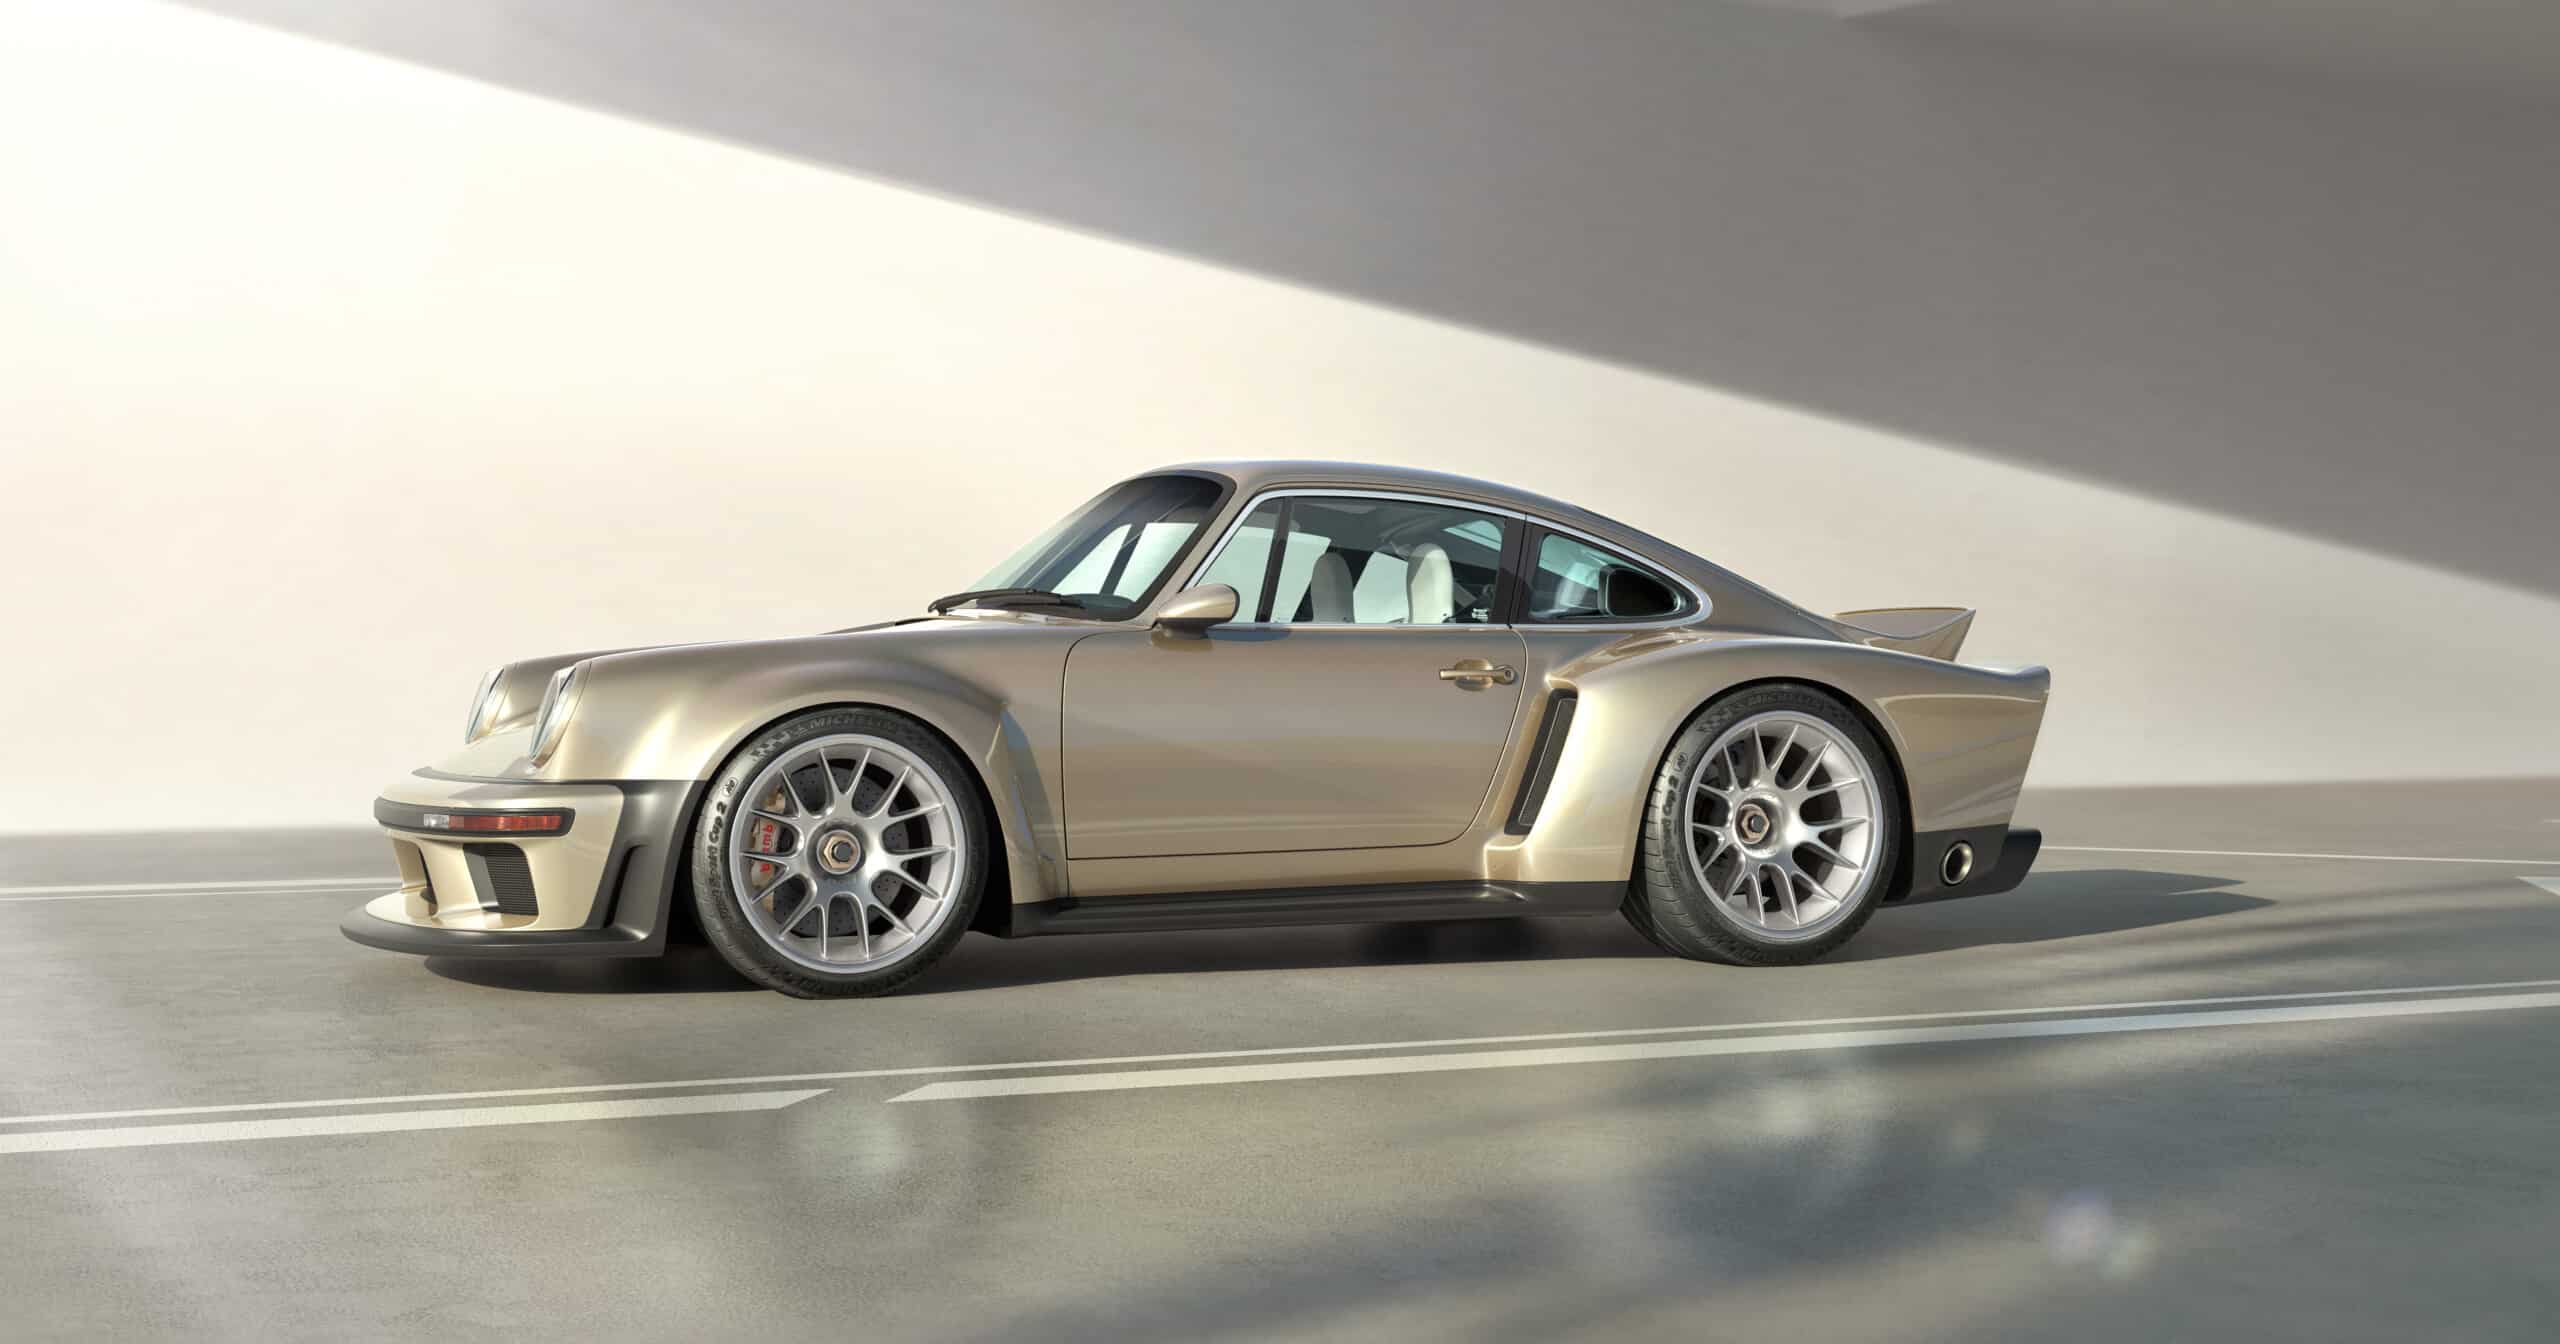 Porsche Singer 911 DLS Turbo